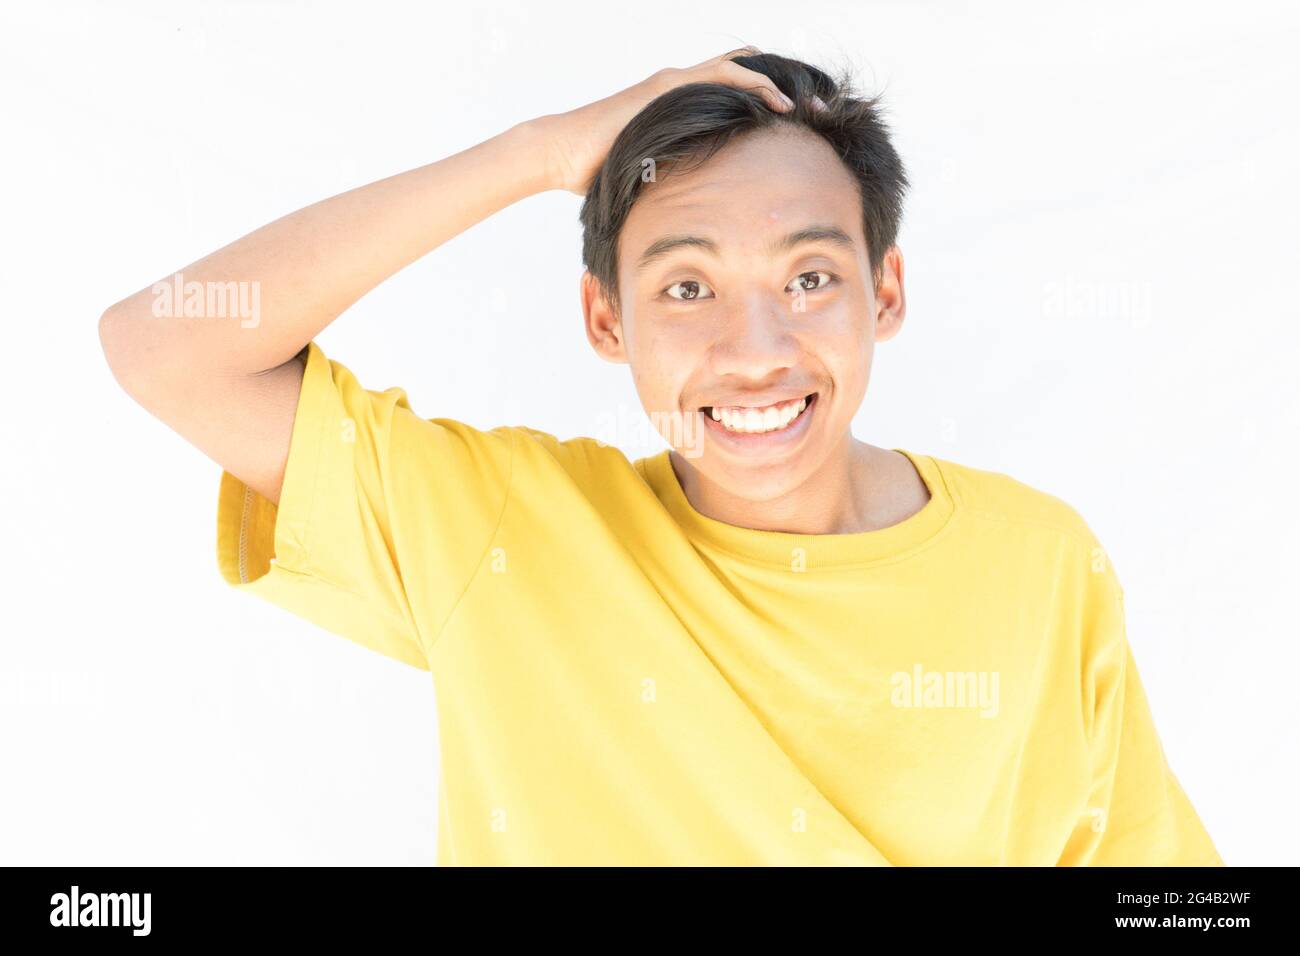 Un ragazzo indonesiano con una t-shirt gialla che guarda la macchina fotografica e sorride su uno sfondo bianco Foto Stock